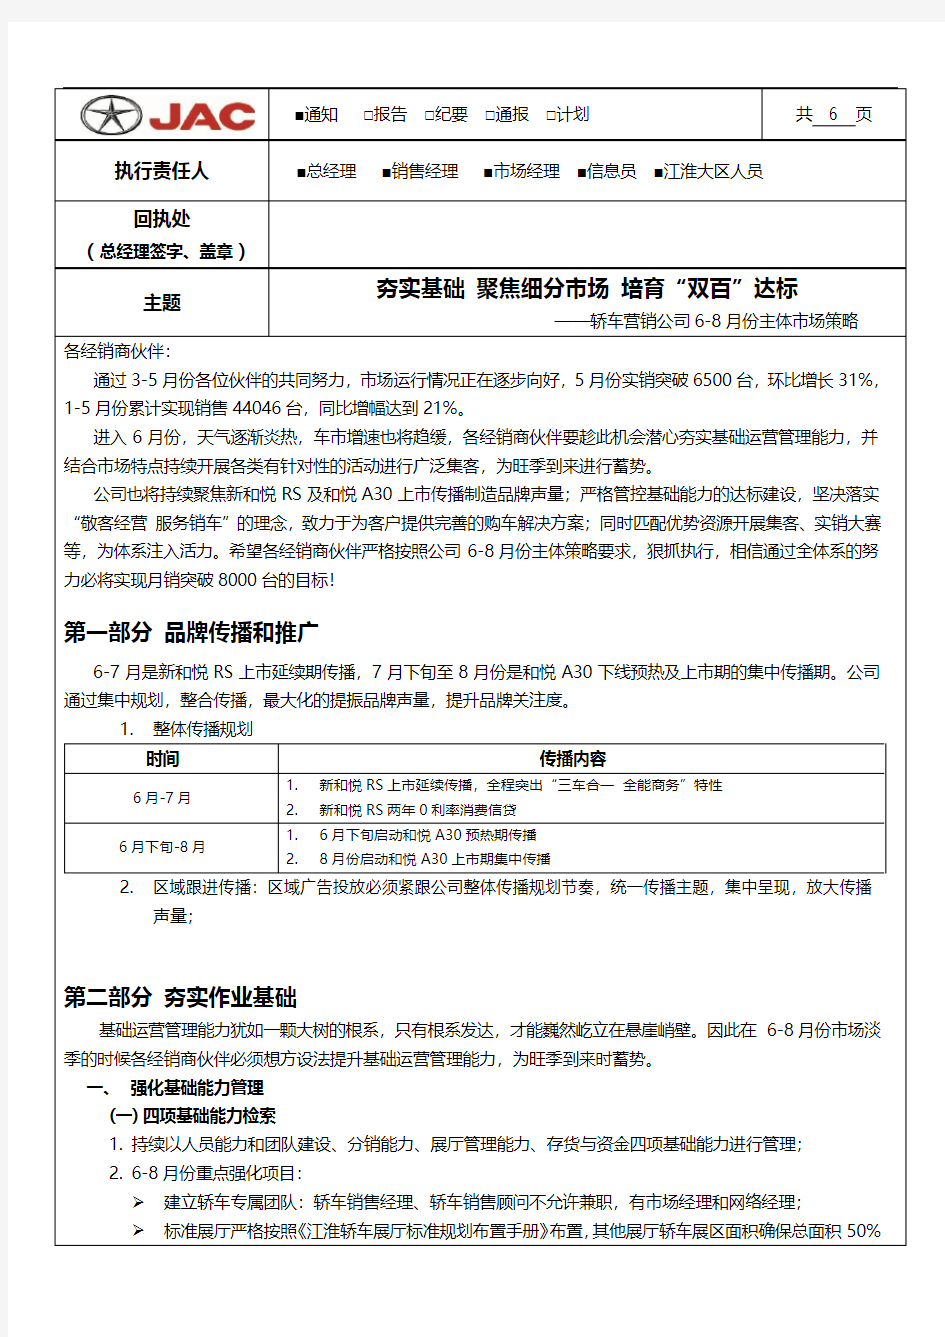 江淮汽车轿车营销公司2013年6-8月市场策略